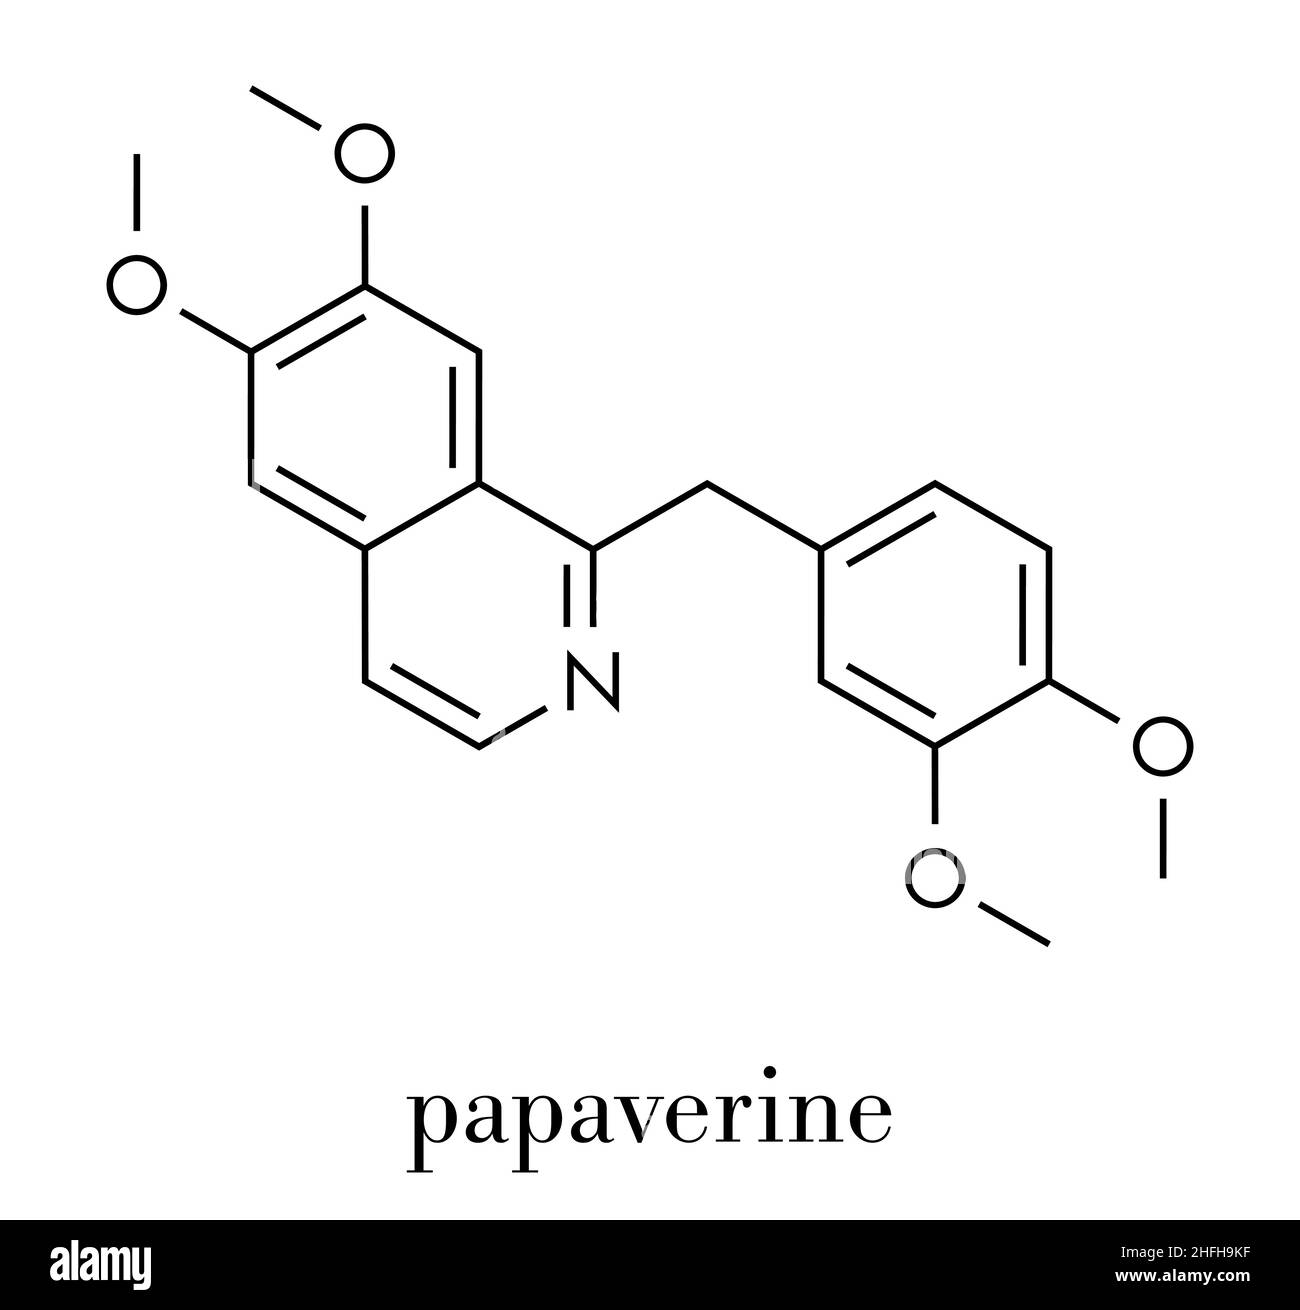 Papaverine opium alkaloid molecule. Used as antispasmodic drug. Skeletal formula. Stock Vector